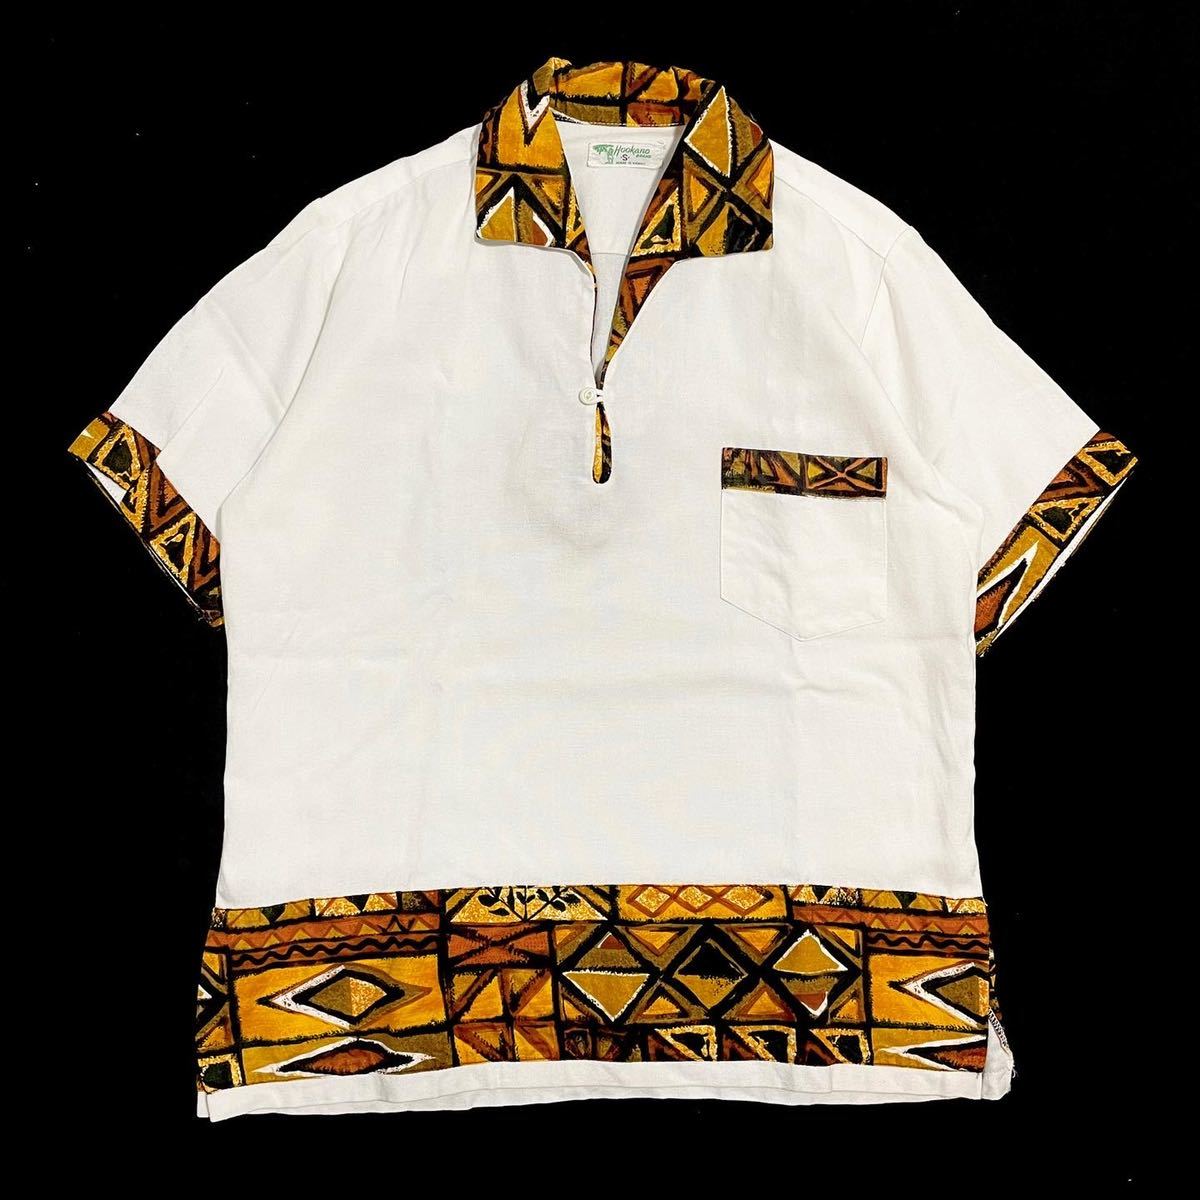 60s レーヨン プルオーバー ハワイアン シャツ / size s / 50s 70s 80s アロハシャツ 50年代 60年代 小紋柄 開襟 バティック